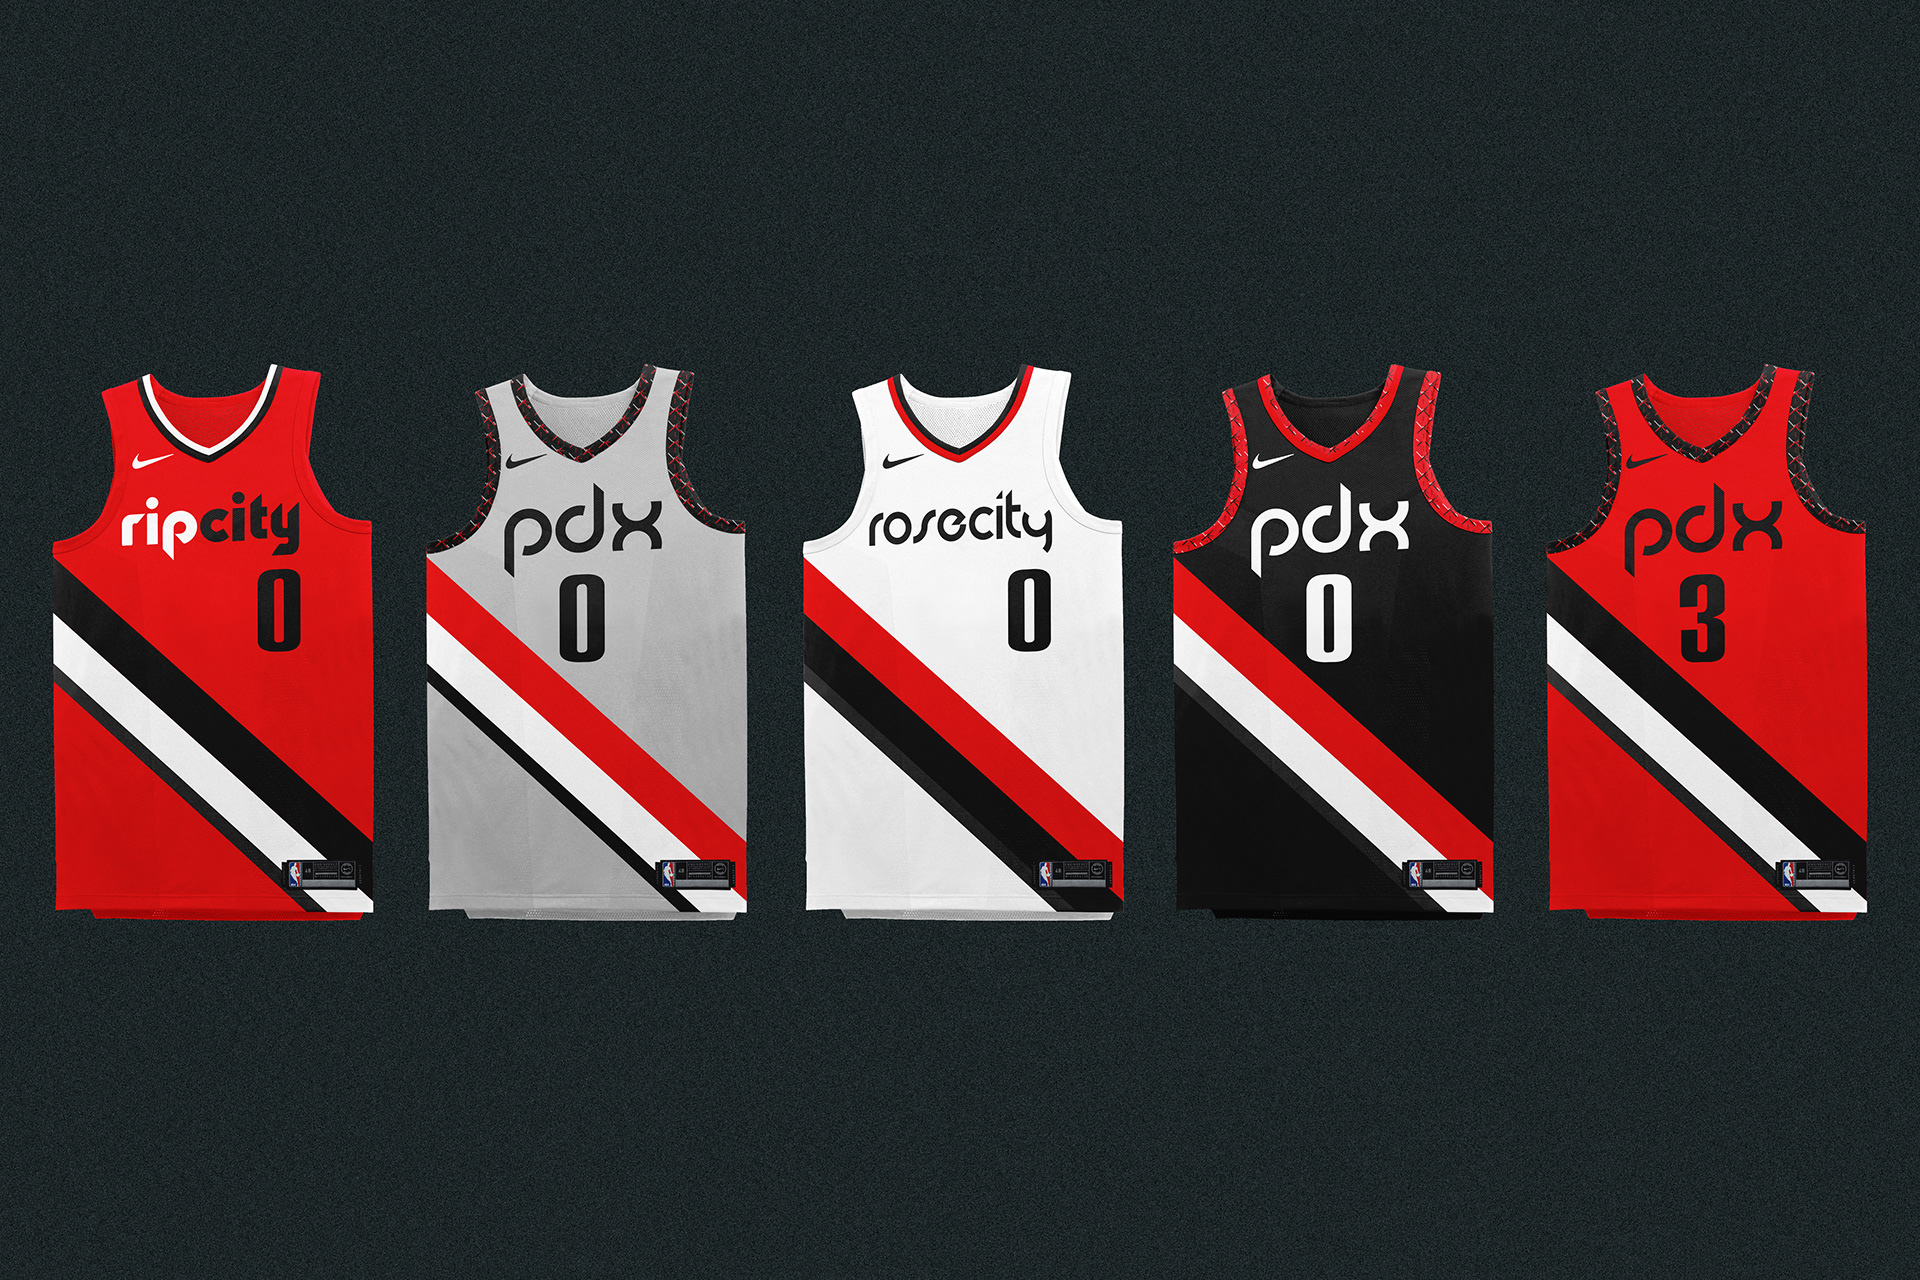 pdx jersey design